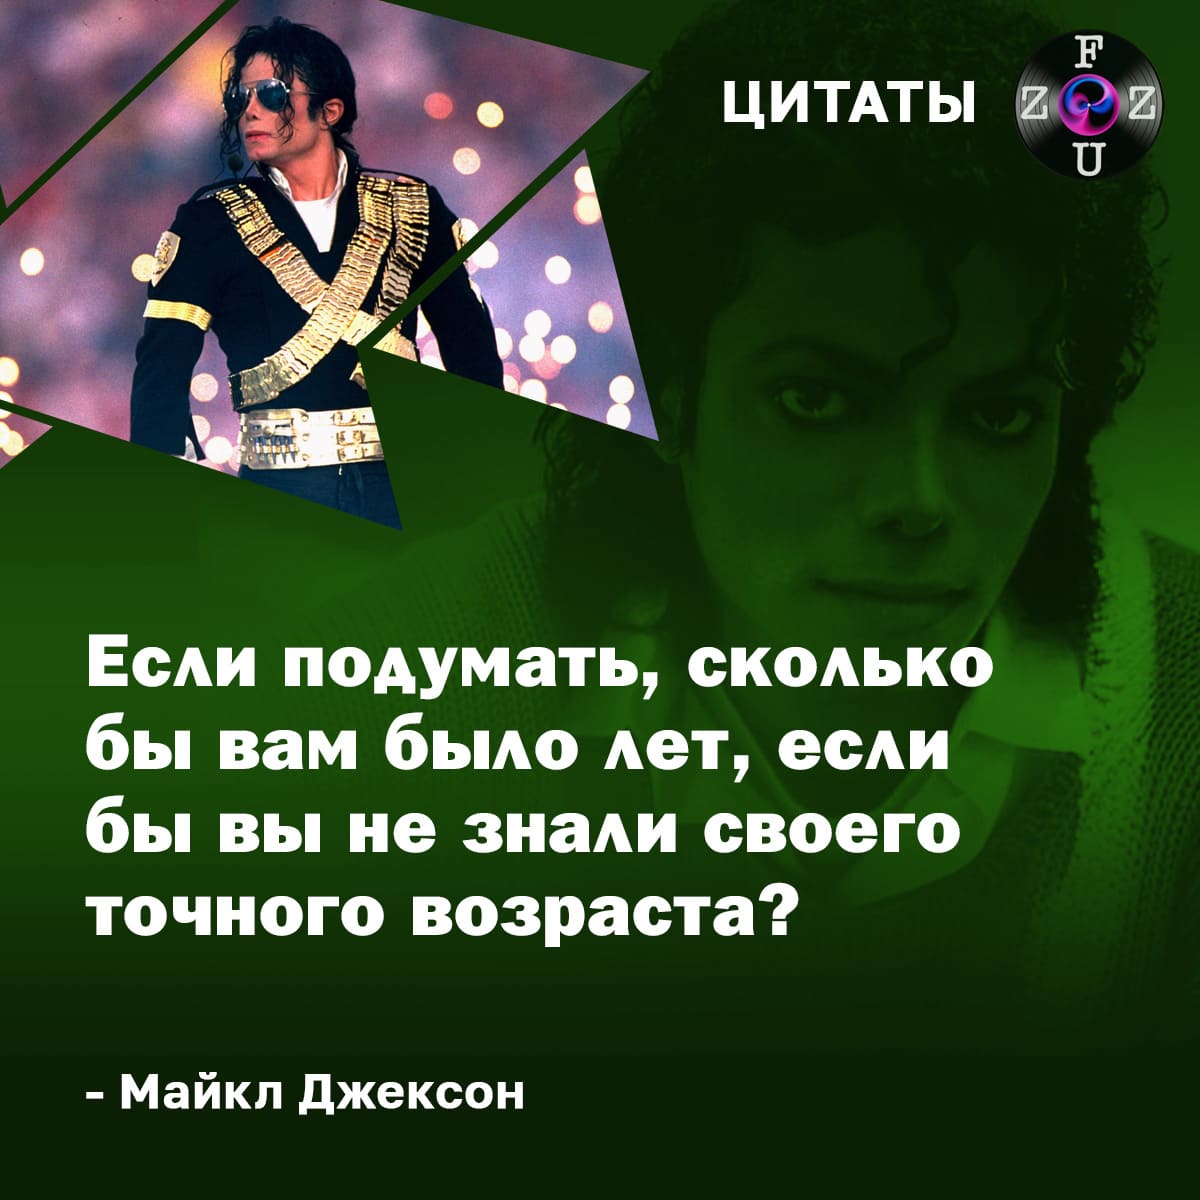 Citations de Michael Jackson...